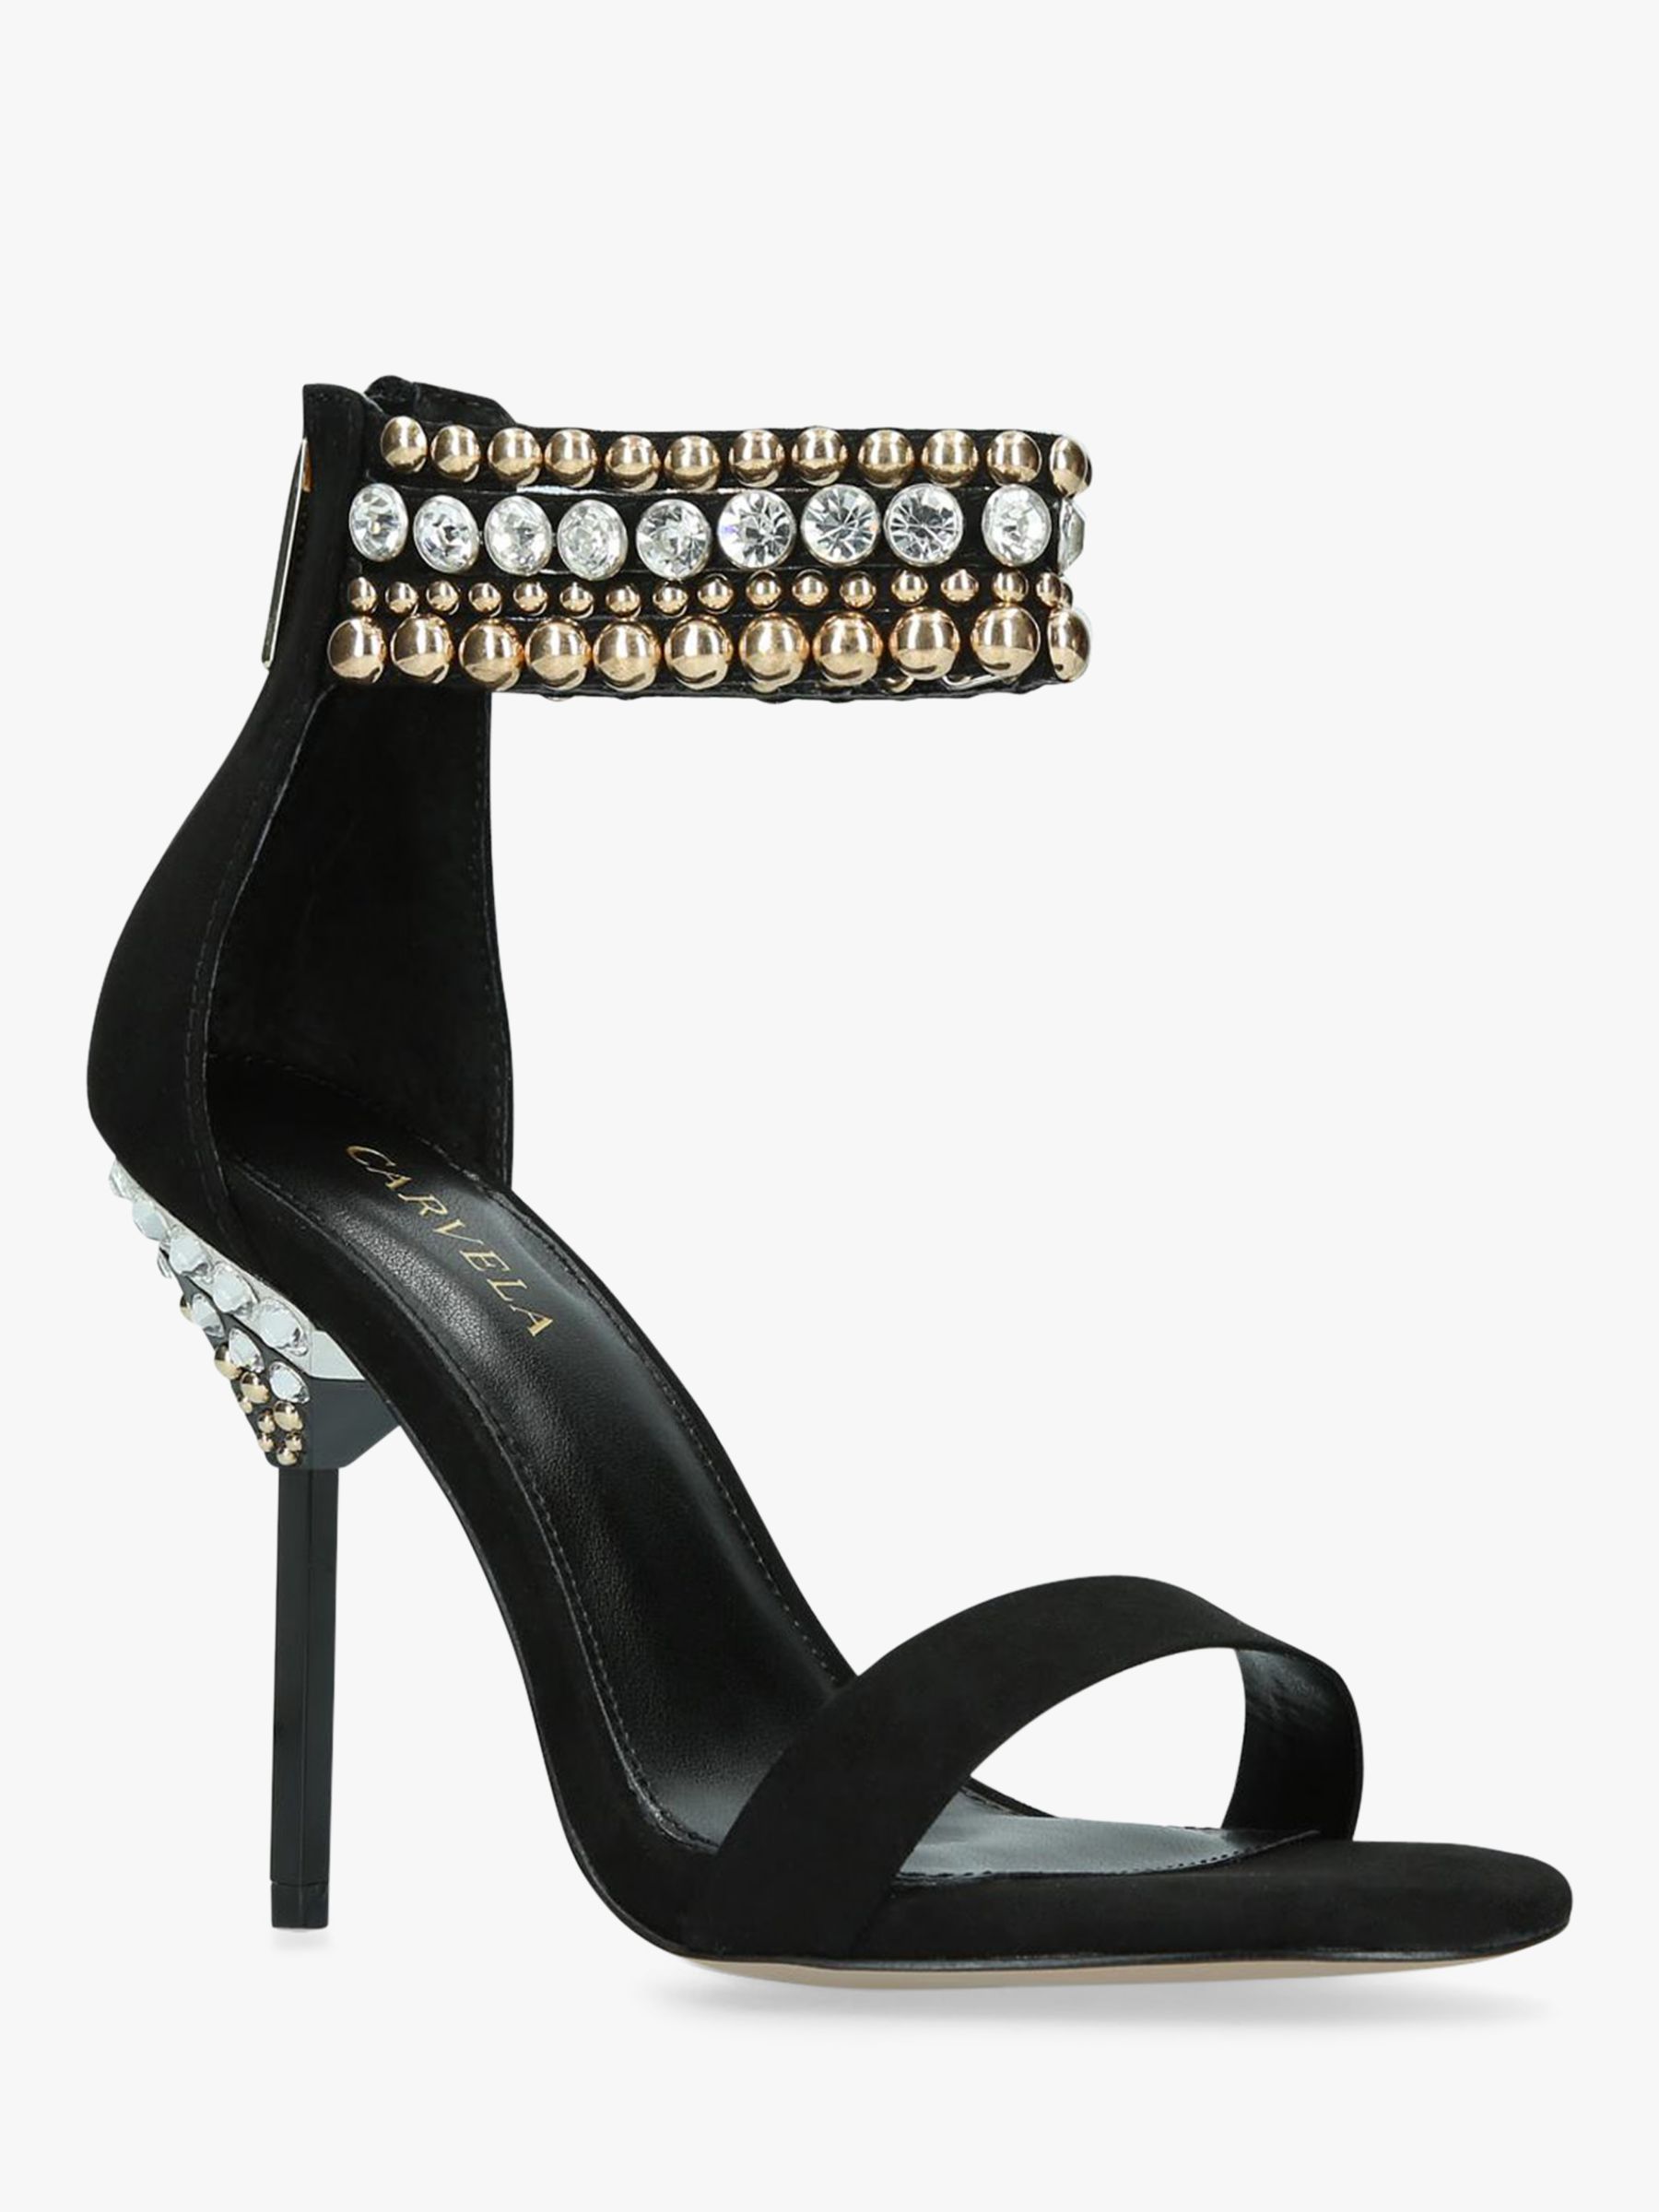 carvela heeled sandals